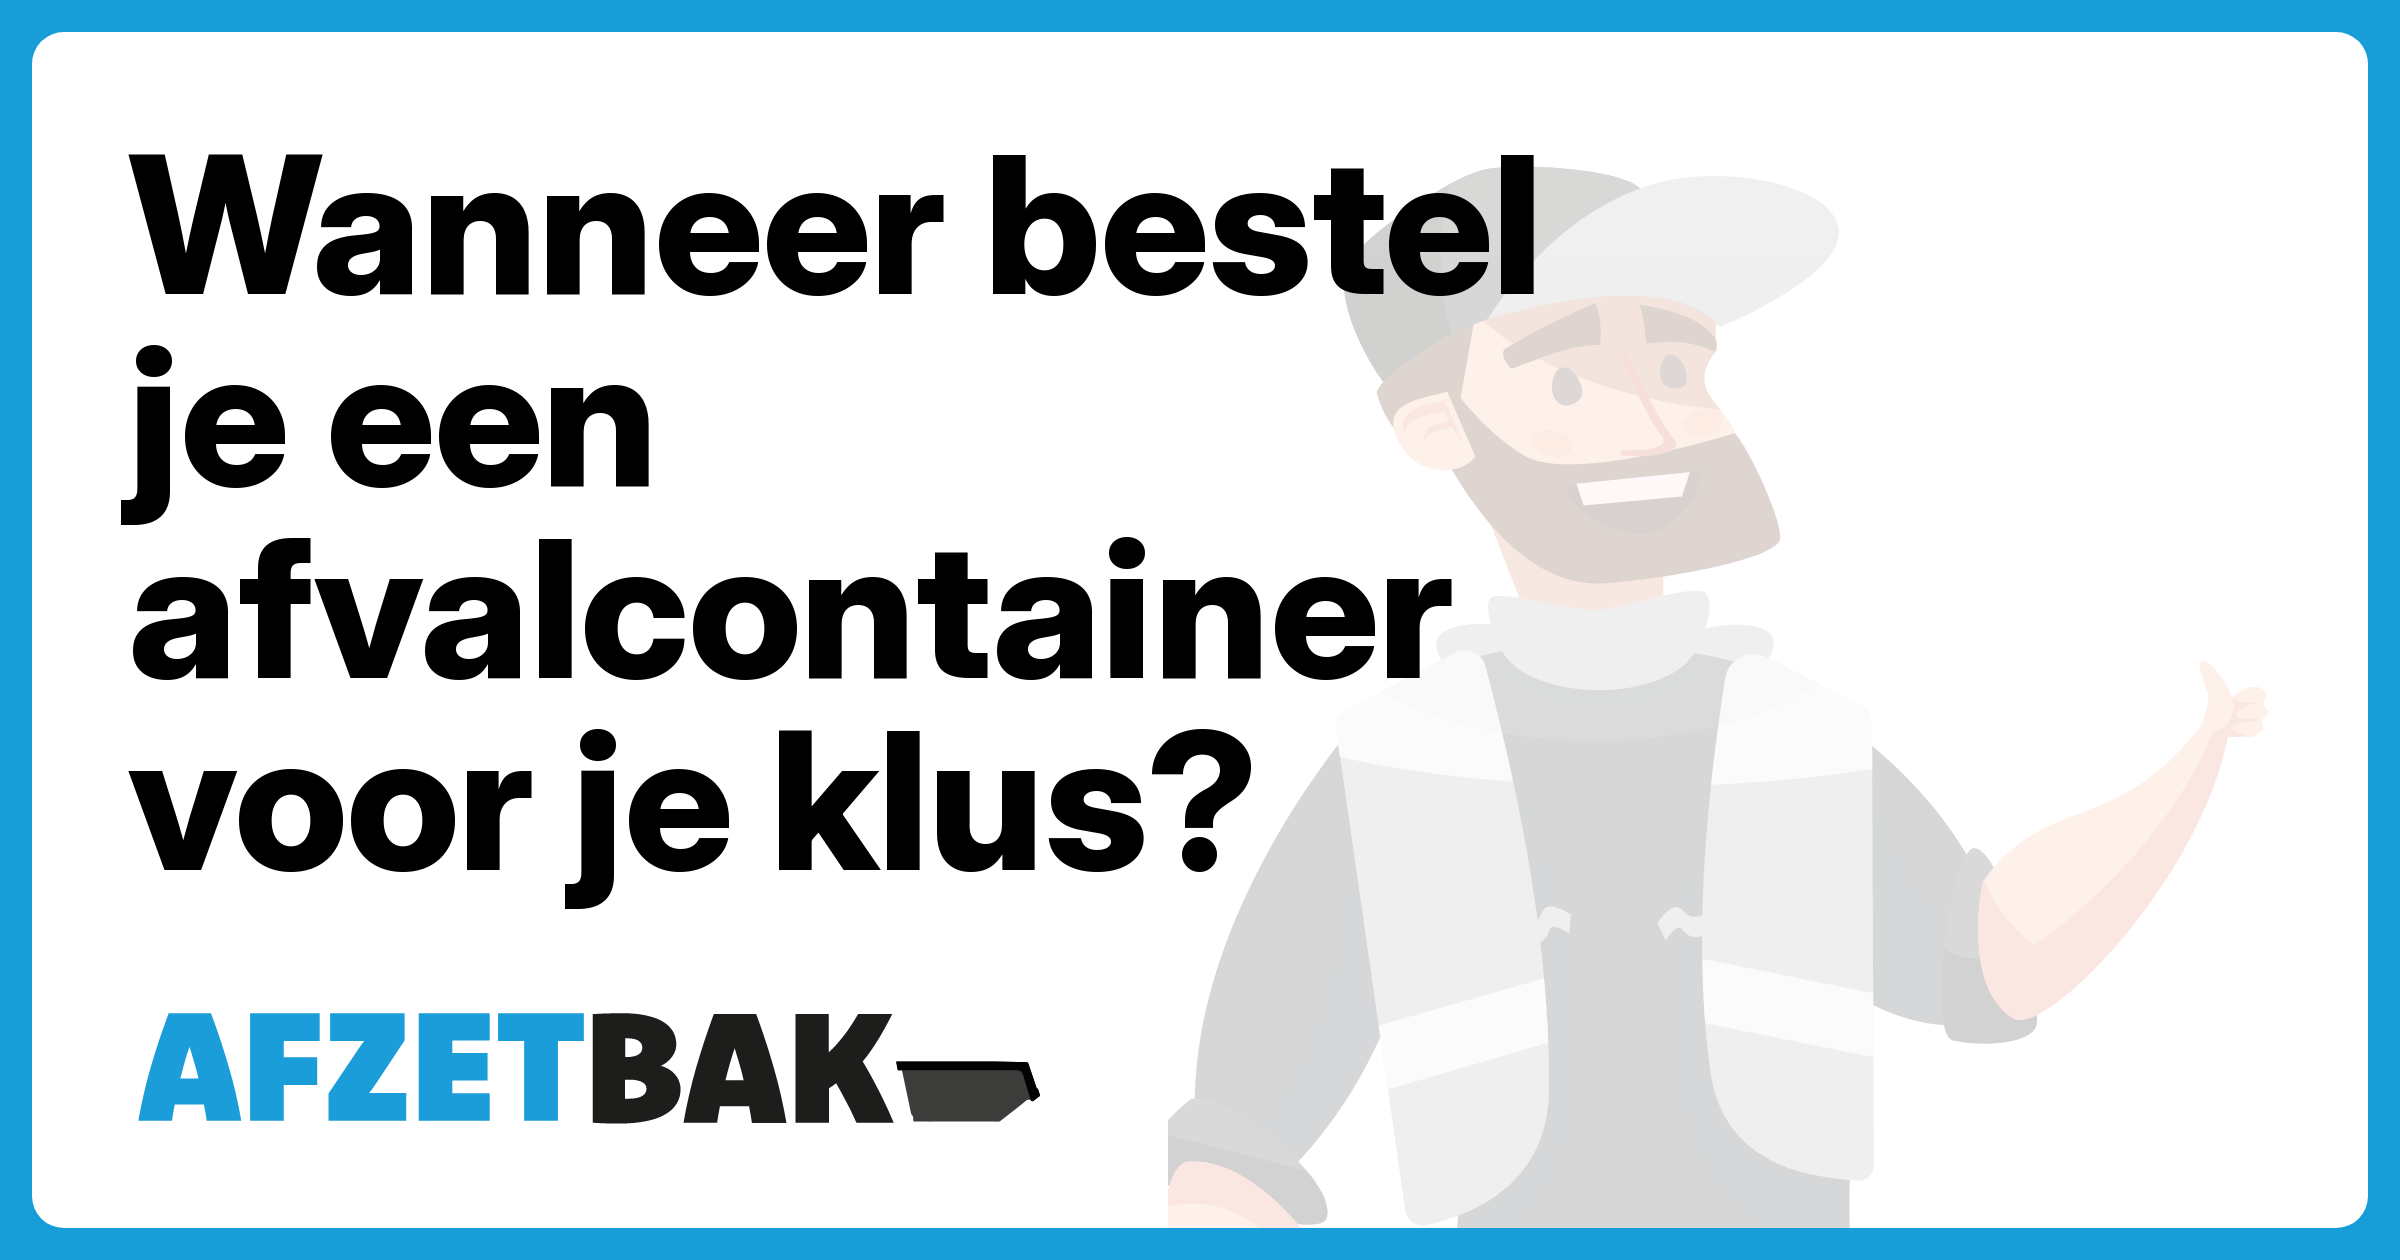 Wanneer bestel je een afvalcontainer voor je klus? - Afzetbak.nl